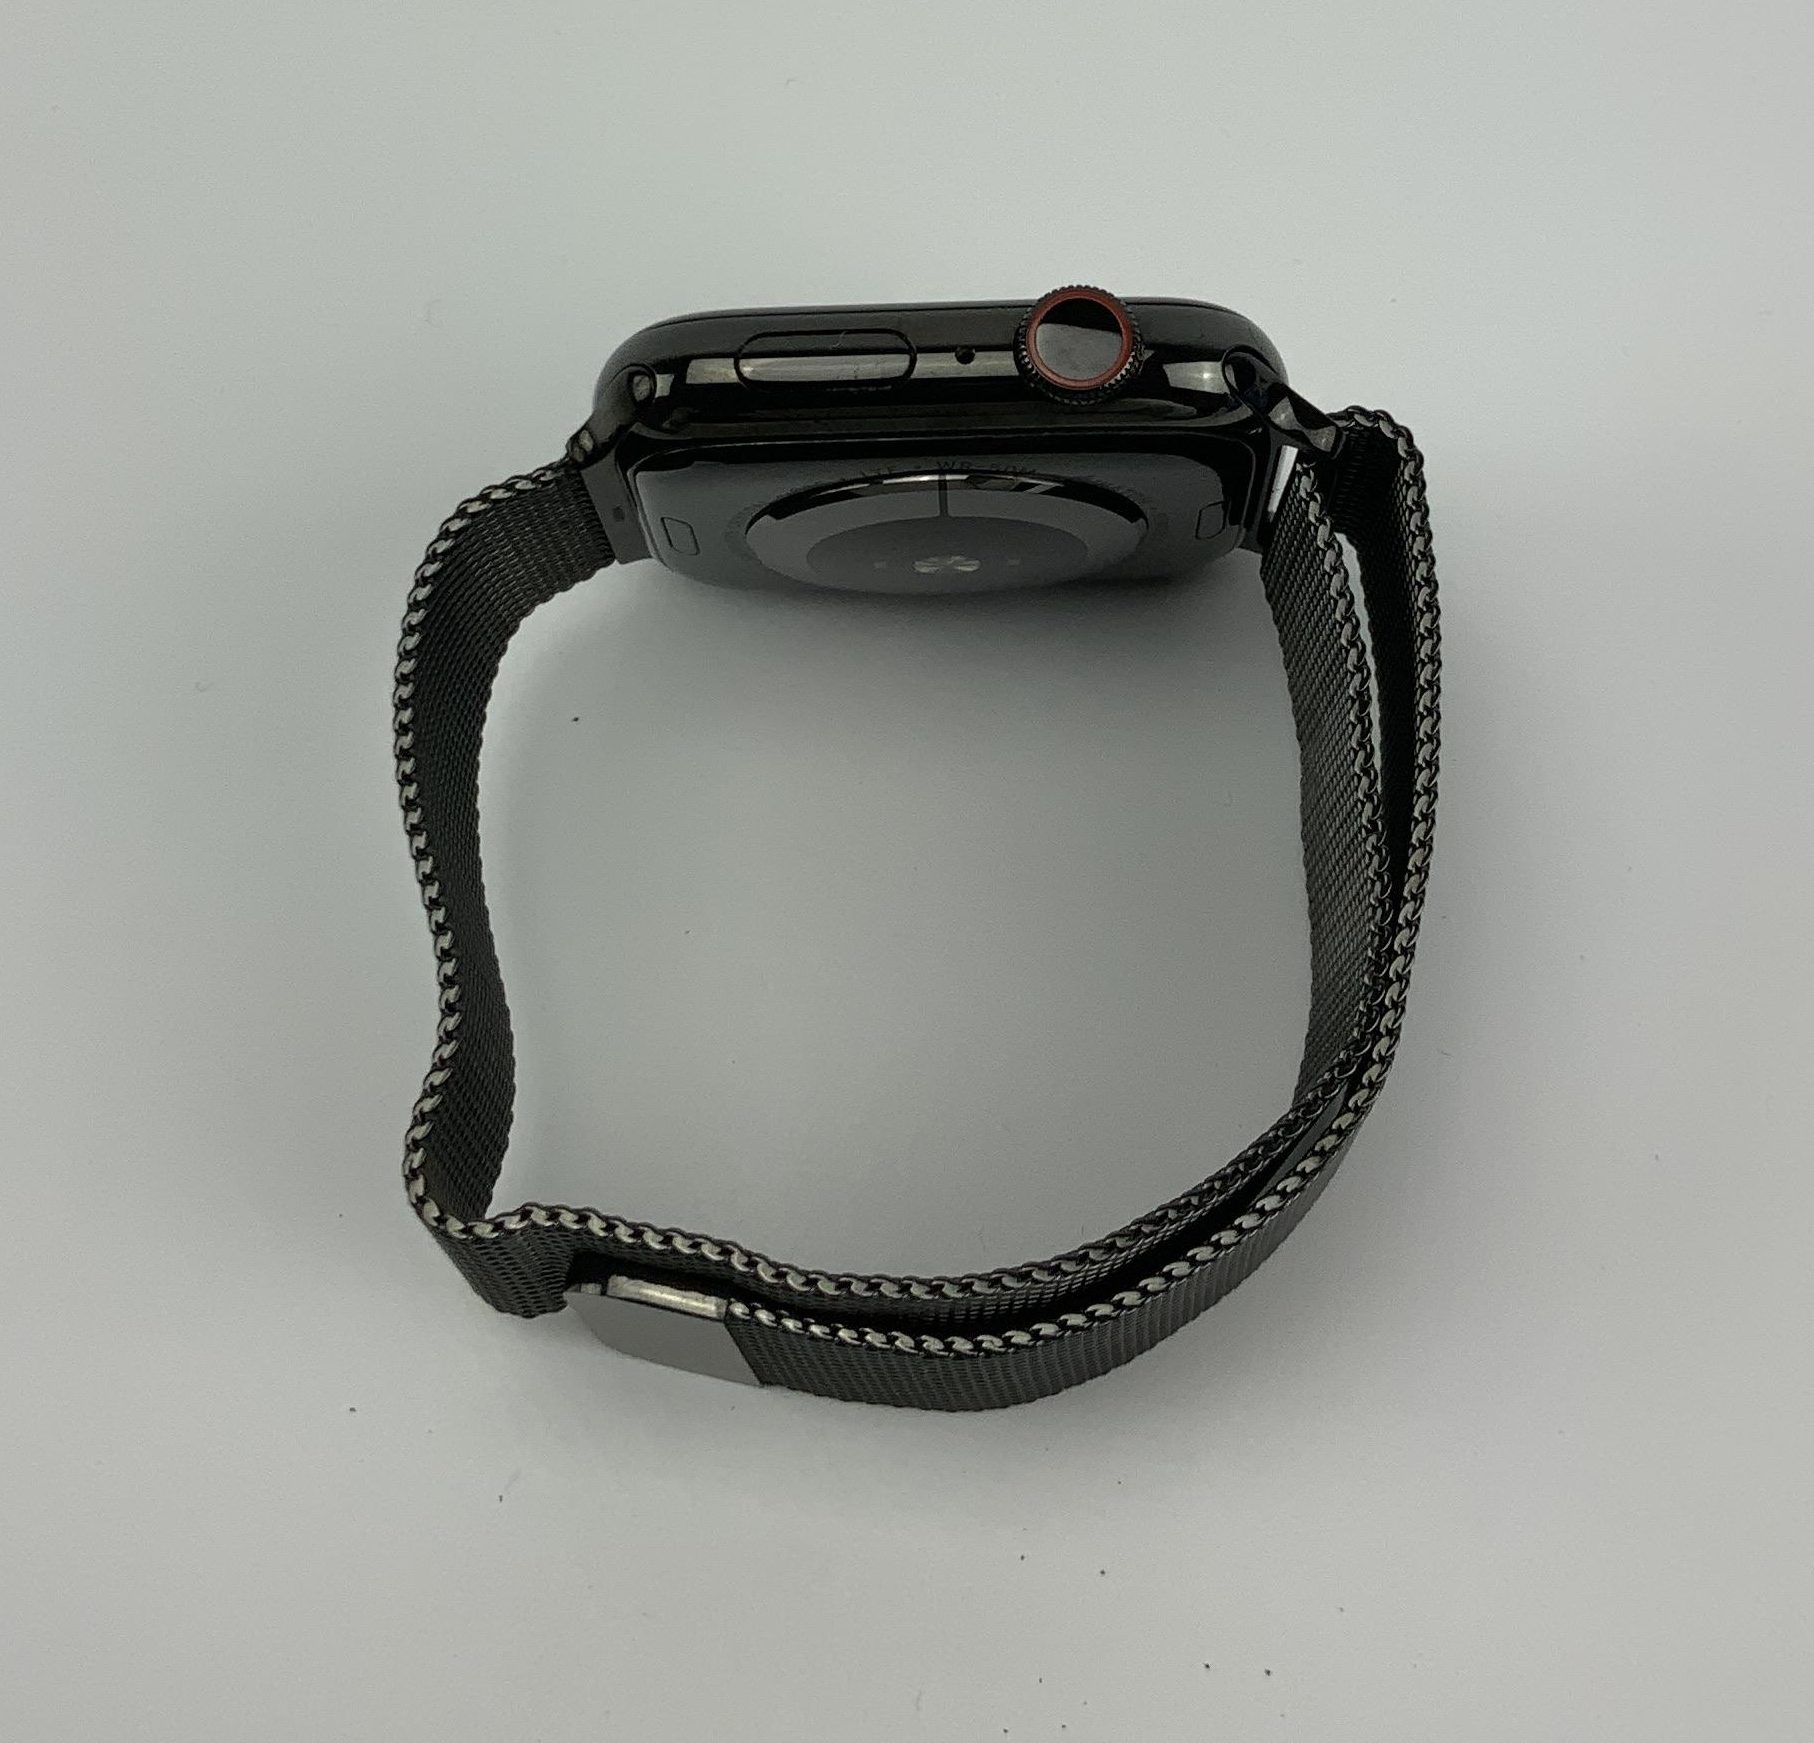 Watch Series 4 Steel Cellular (44mm), Space Black, Space Black Milanese Loop, imagen 2